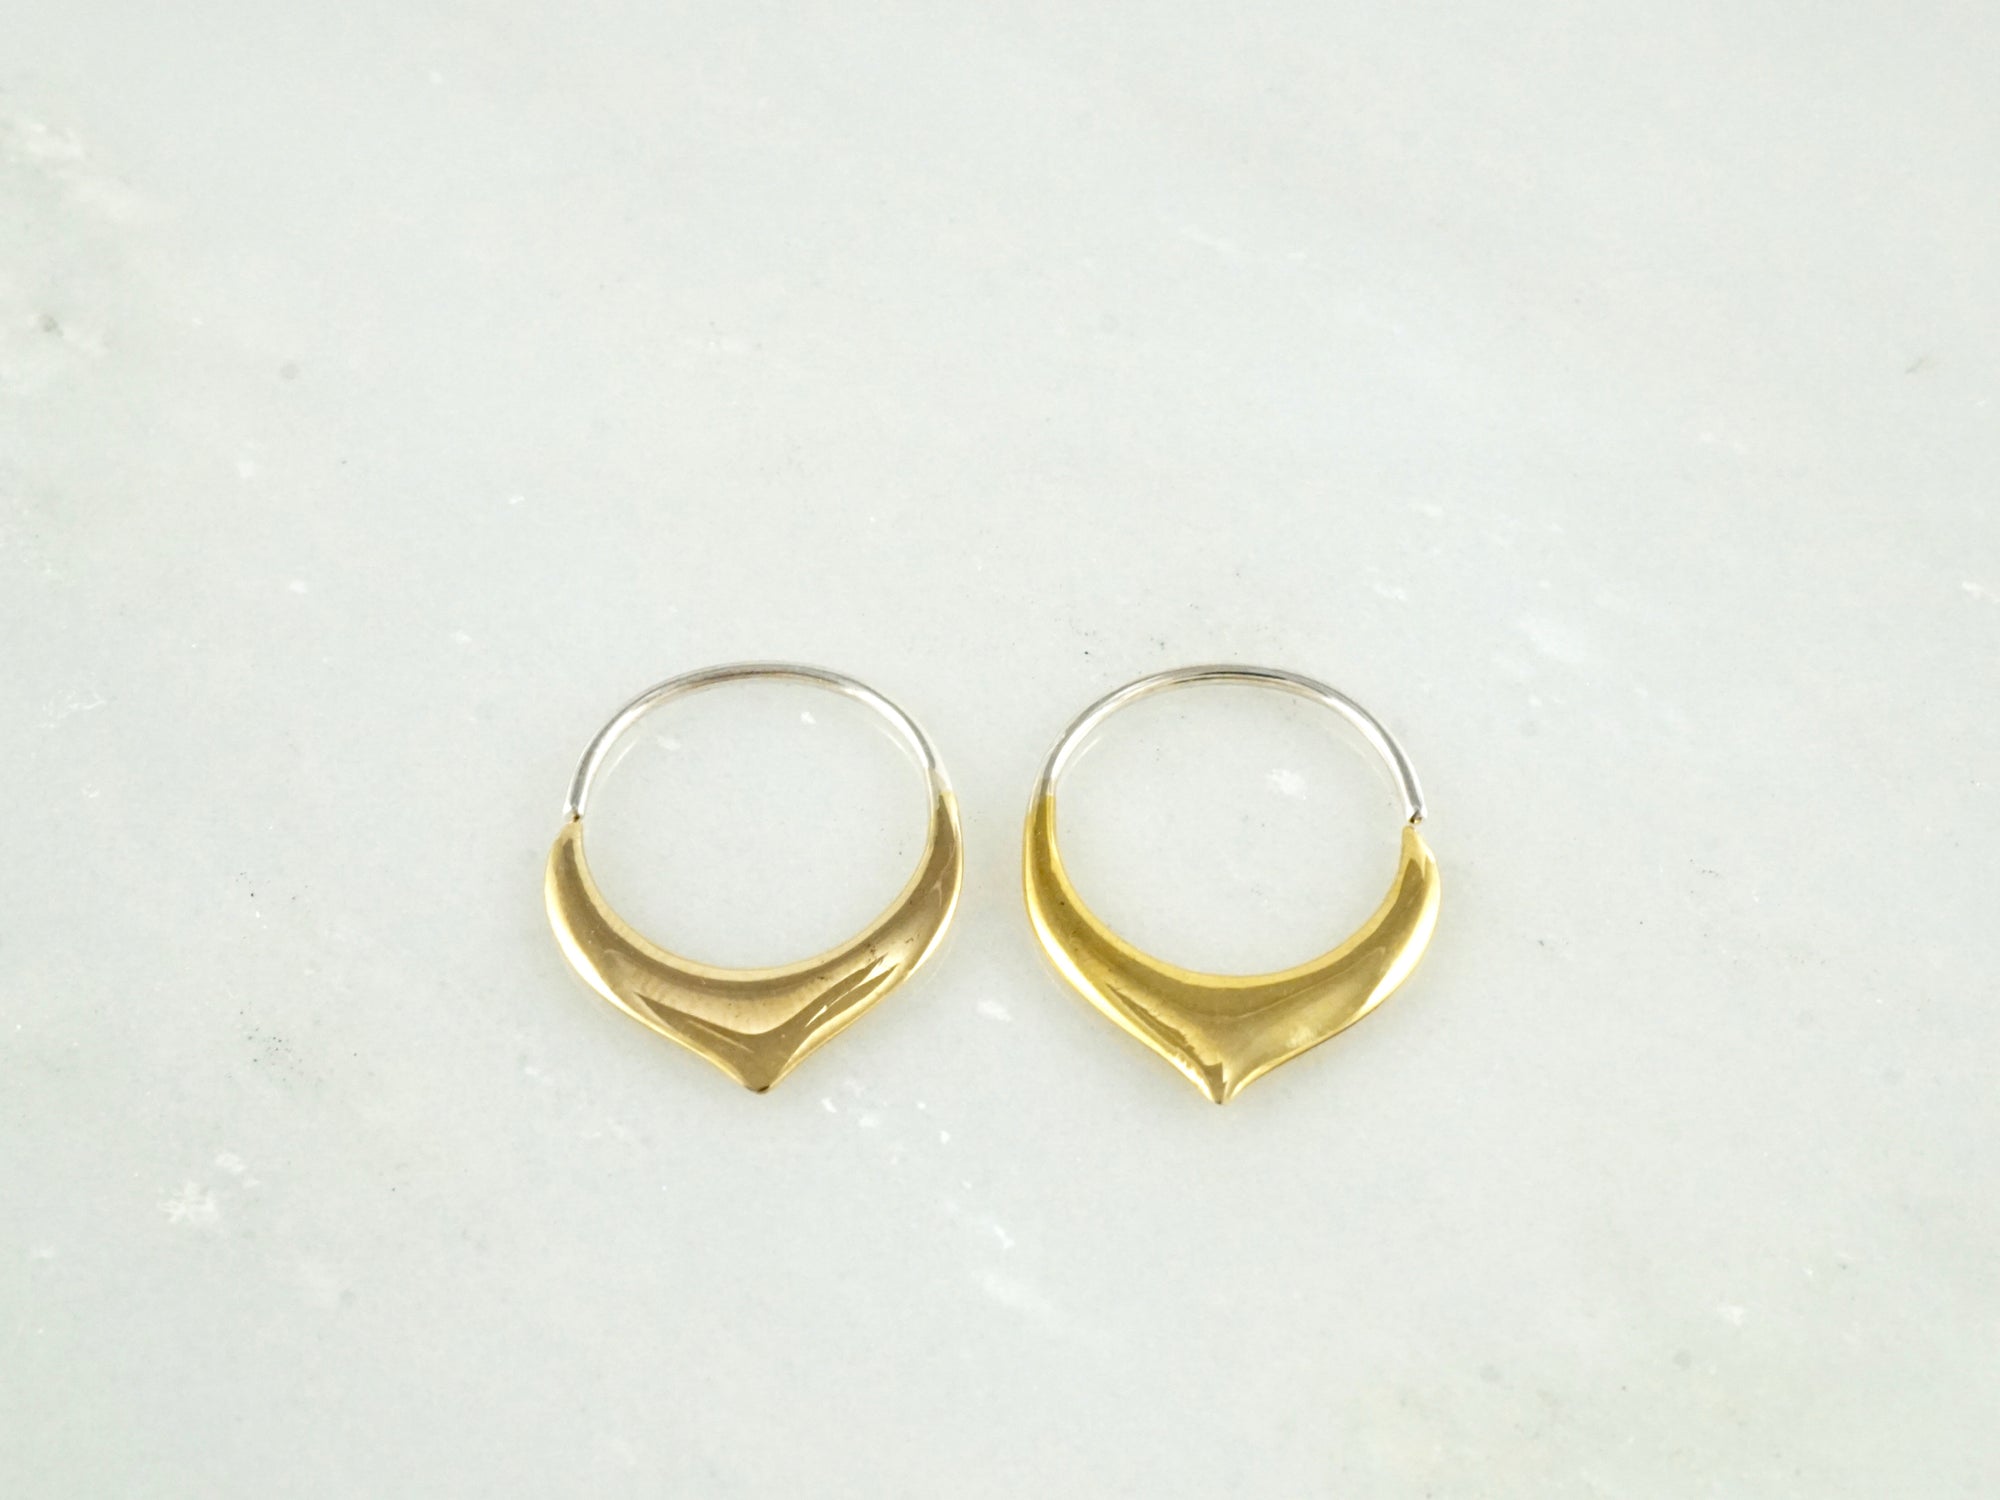 Tiny Petal Earrings gold-tone w/ 925 Silver Hoops - Sleeper Hoops (B240)